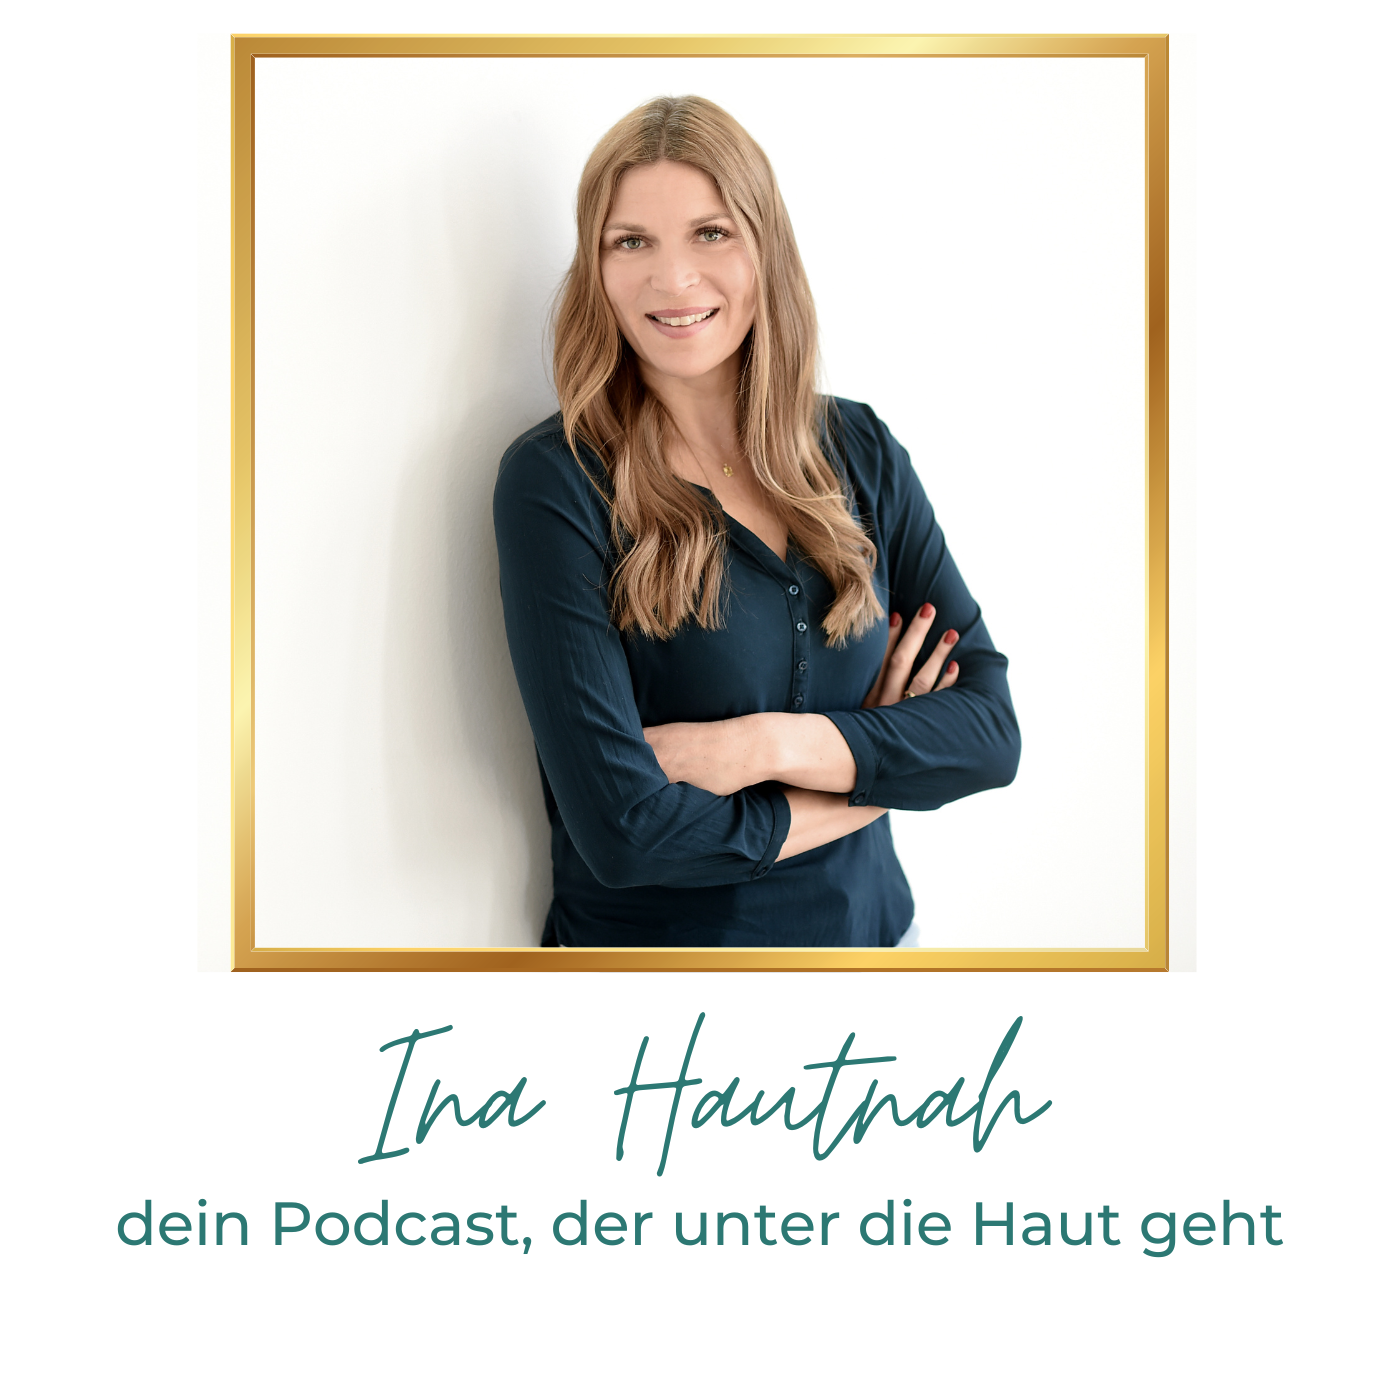 Ina Hautnah - dein Podcast, der unter die Haut geht